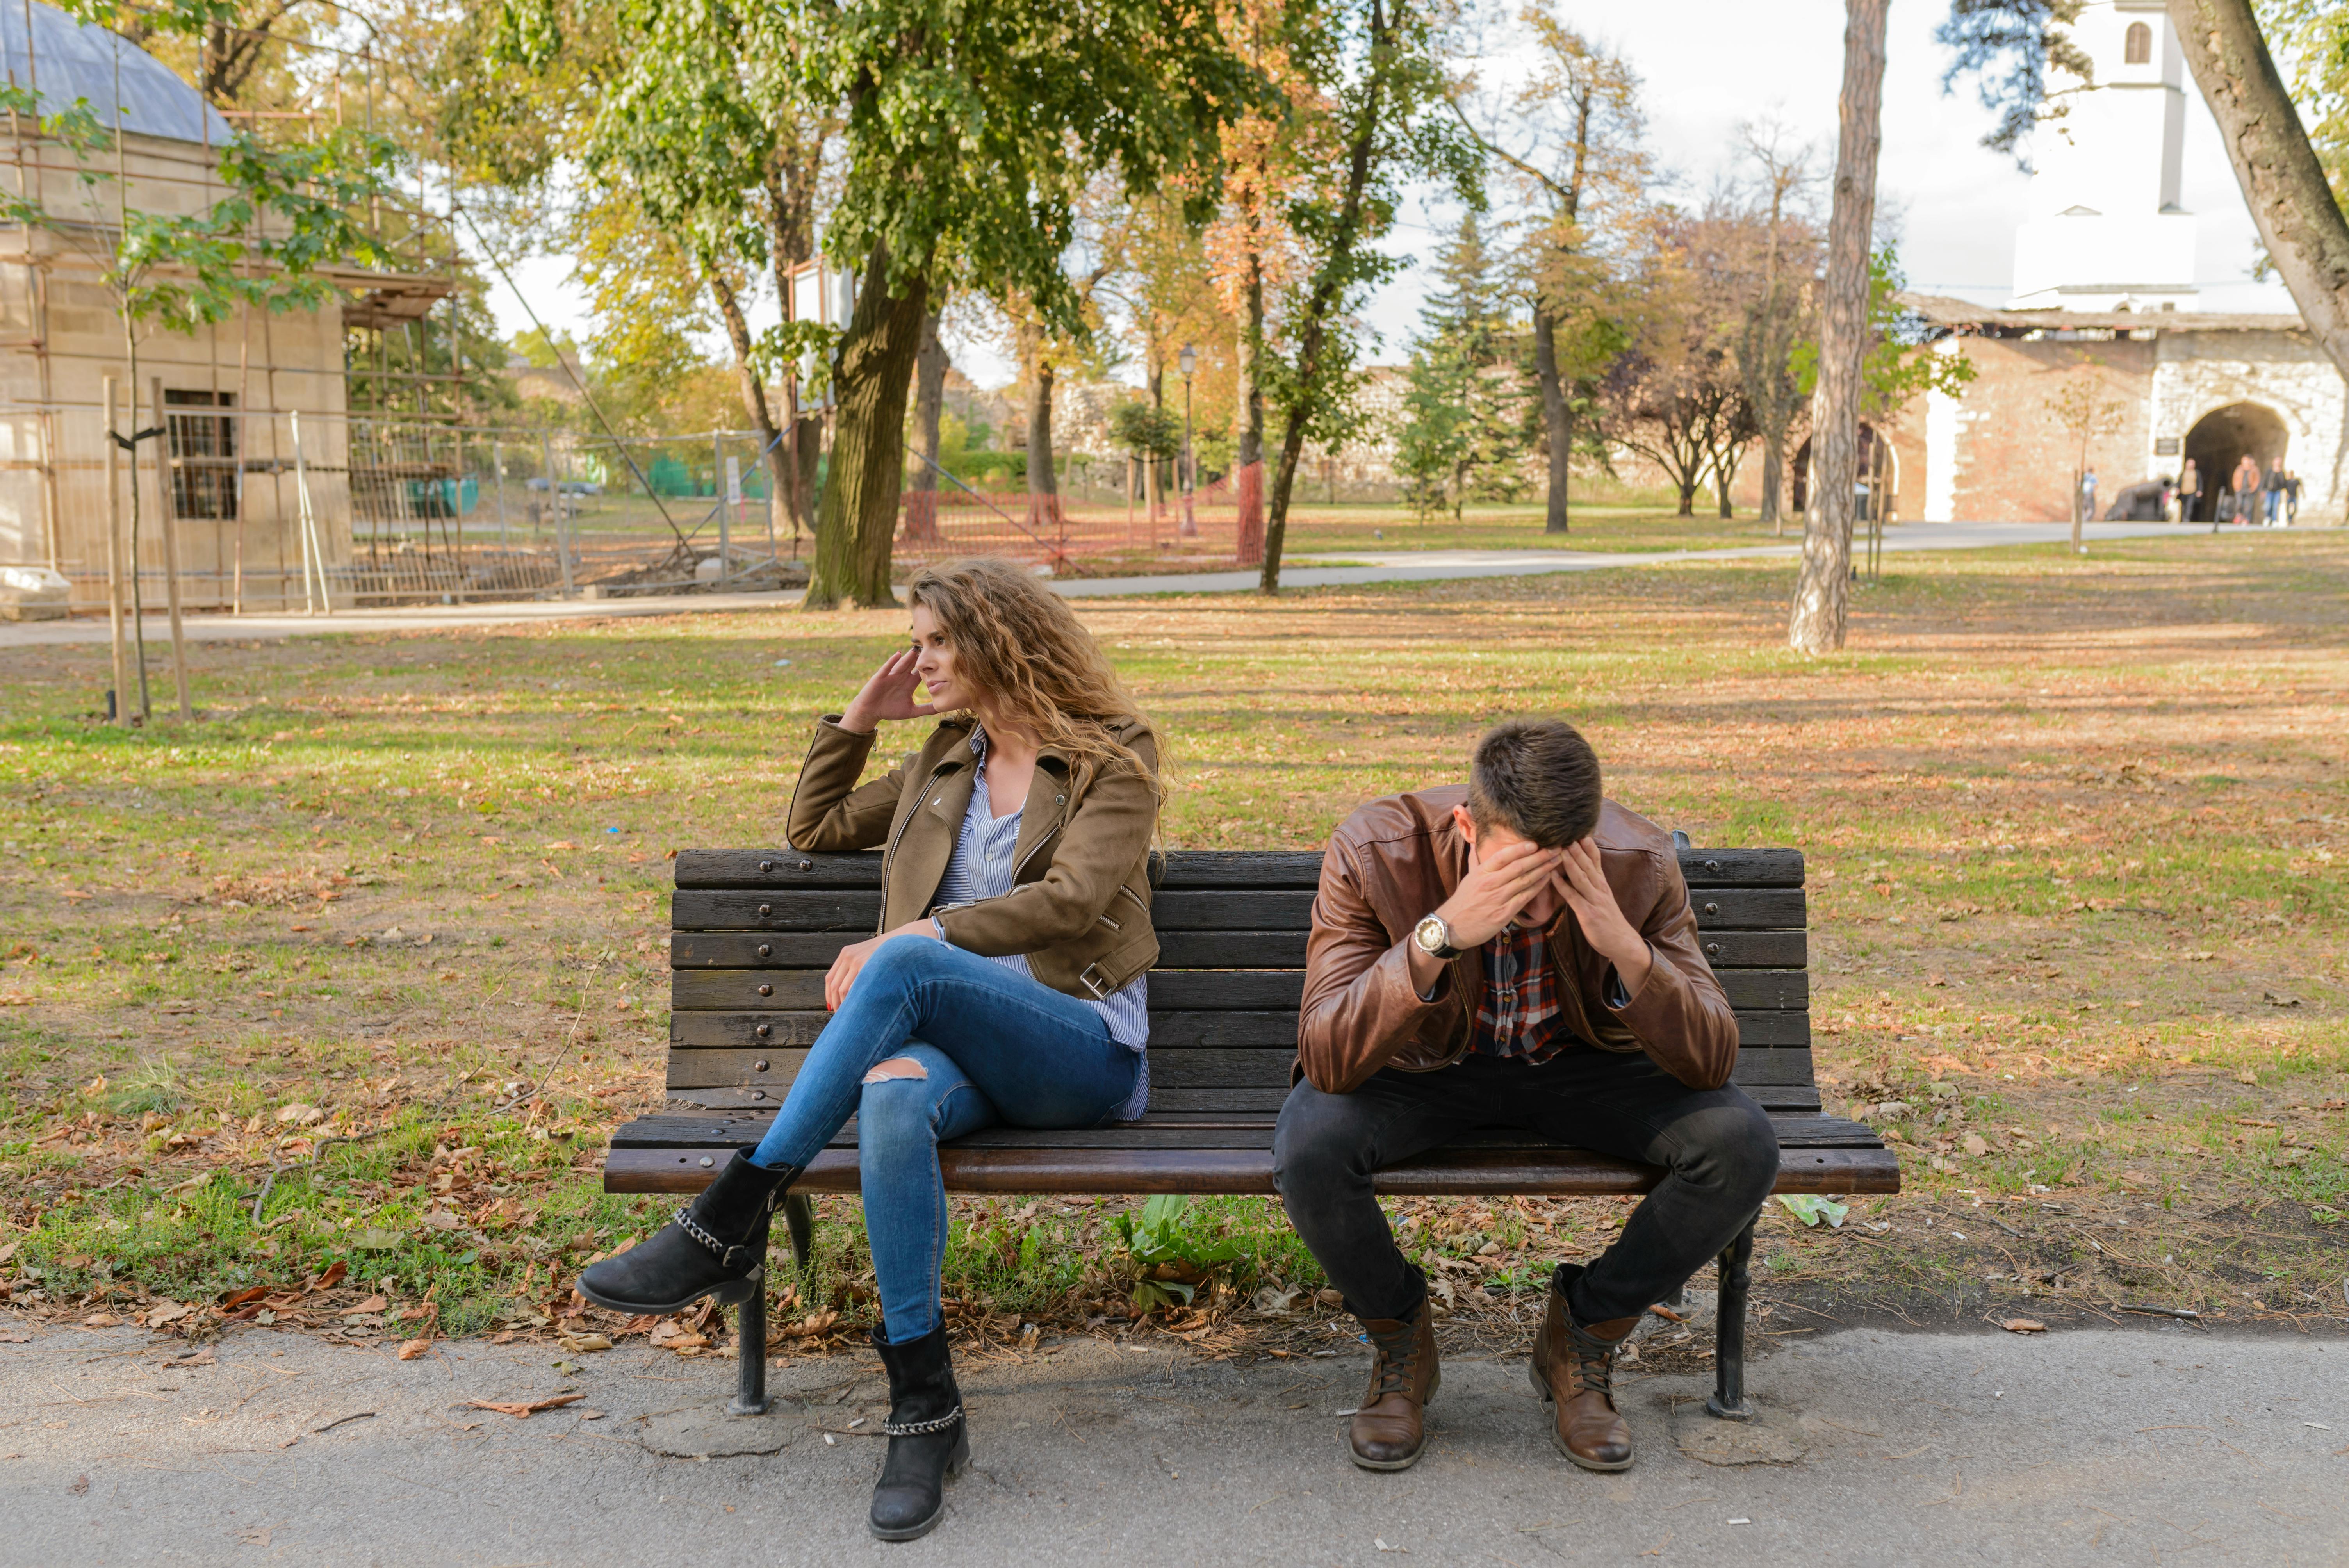 Une femme en colère assise à côté d'un homme en pleurs sur un banc public | Source : Pexels